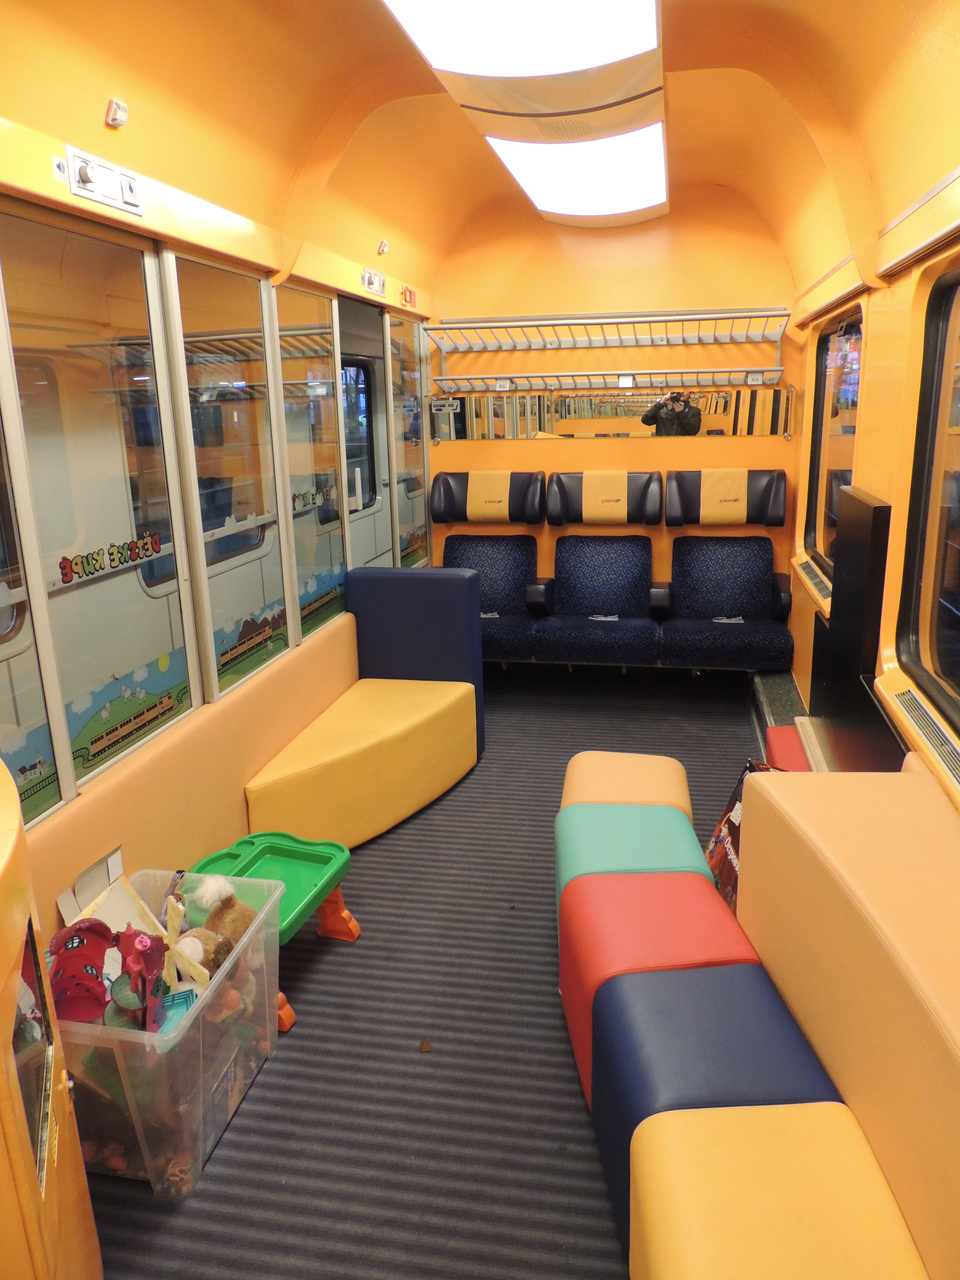 Kellemes időtöltést sejtet a játszóház a vonaton<br>(a fotókat a szerző készítette)